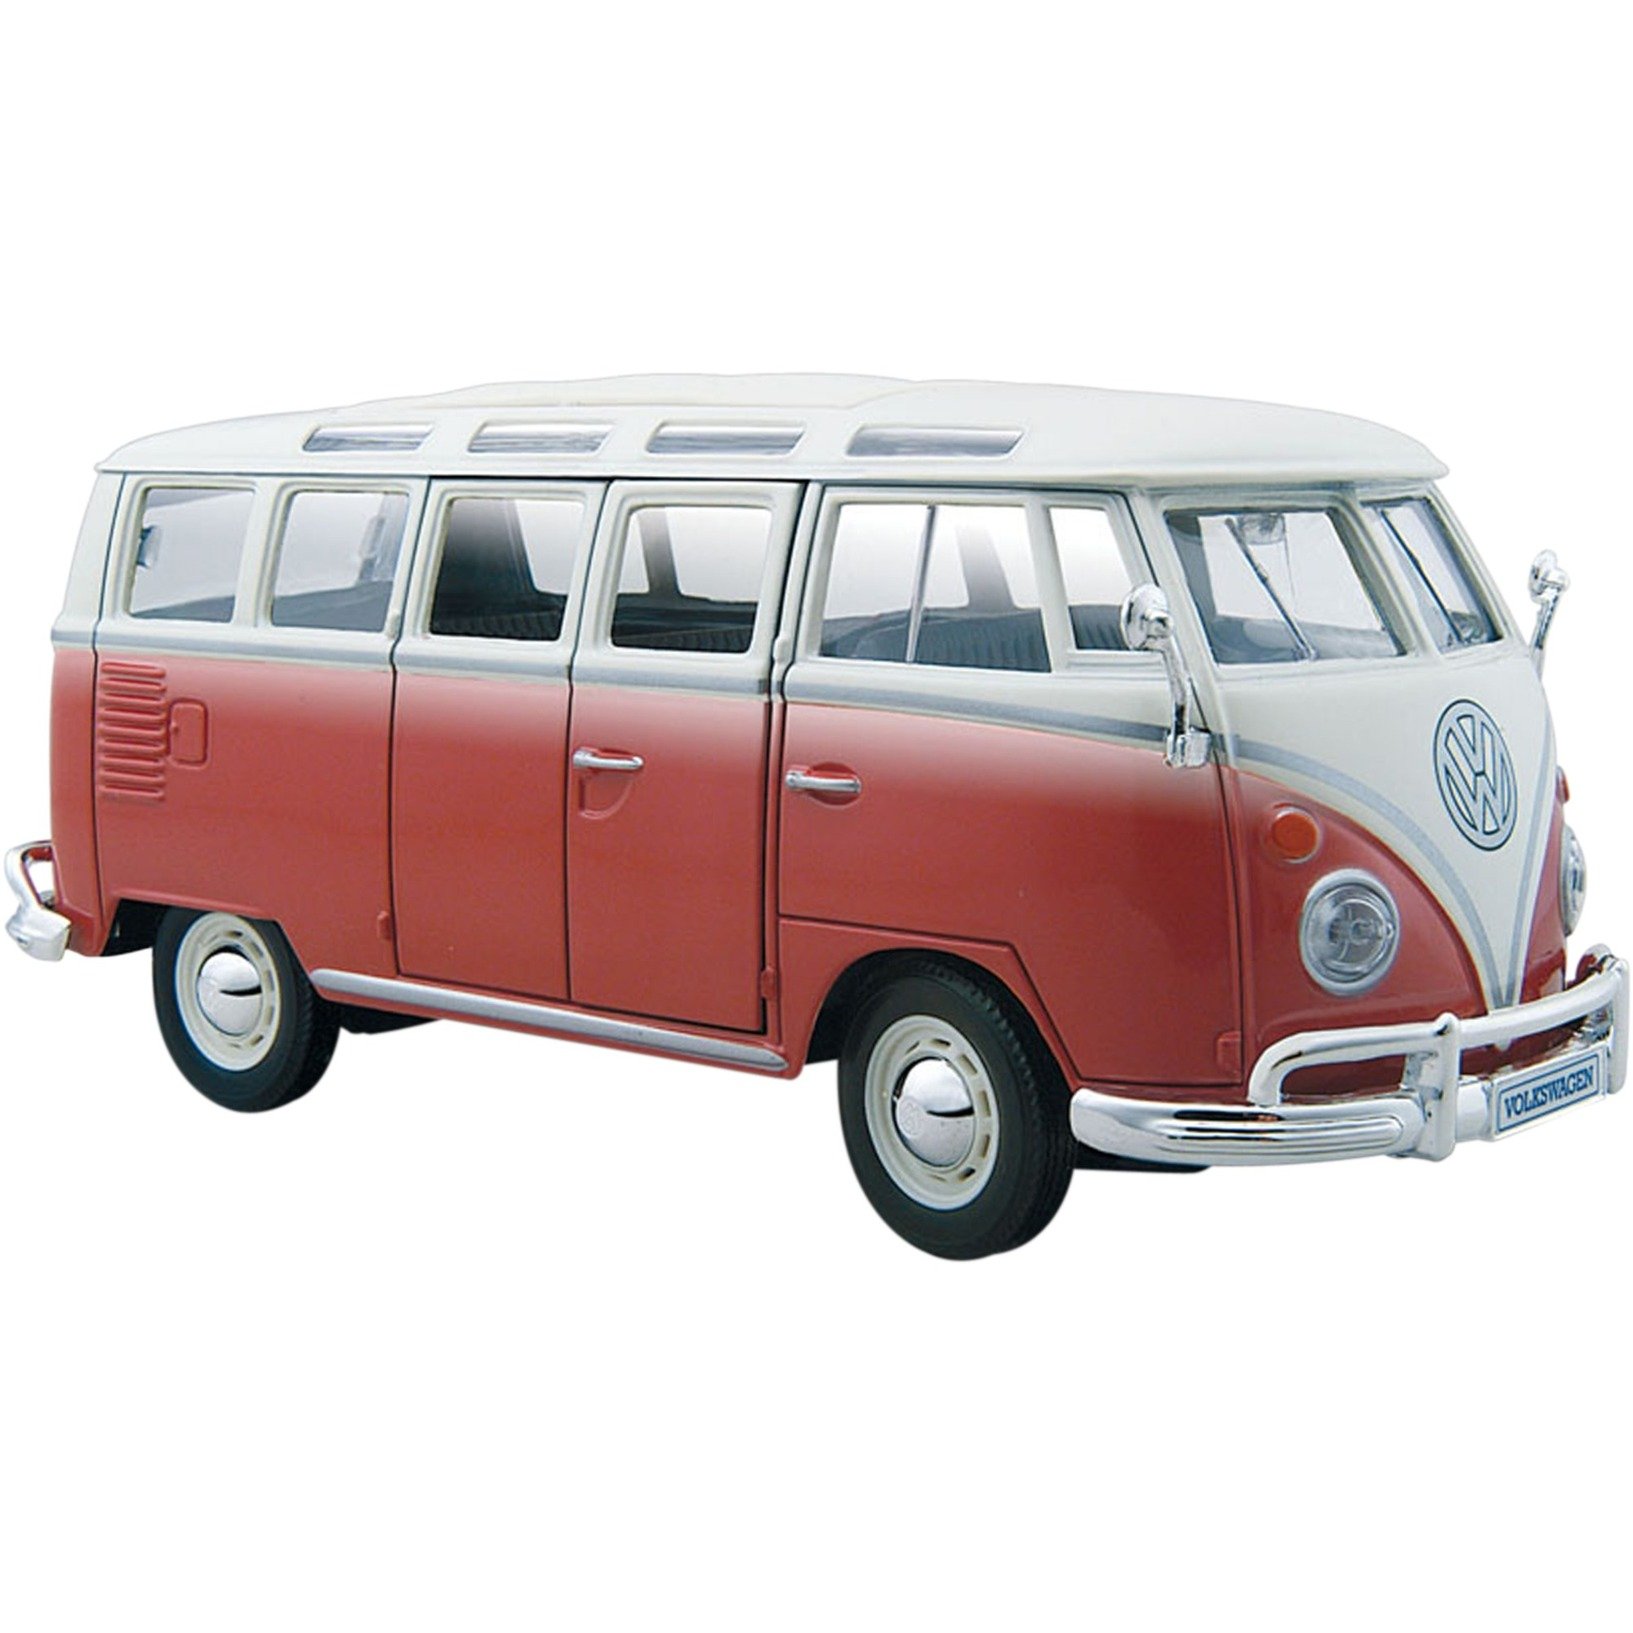 Image of Alternate - VW Bus Samba, Modellfahrzeug online einkaufen bei Alternate